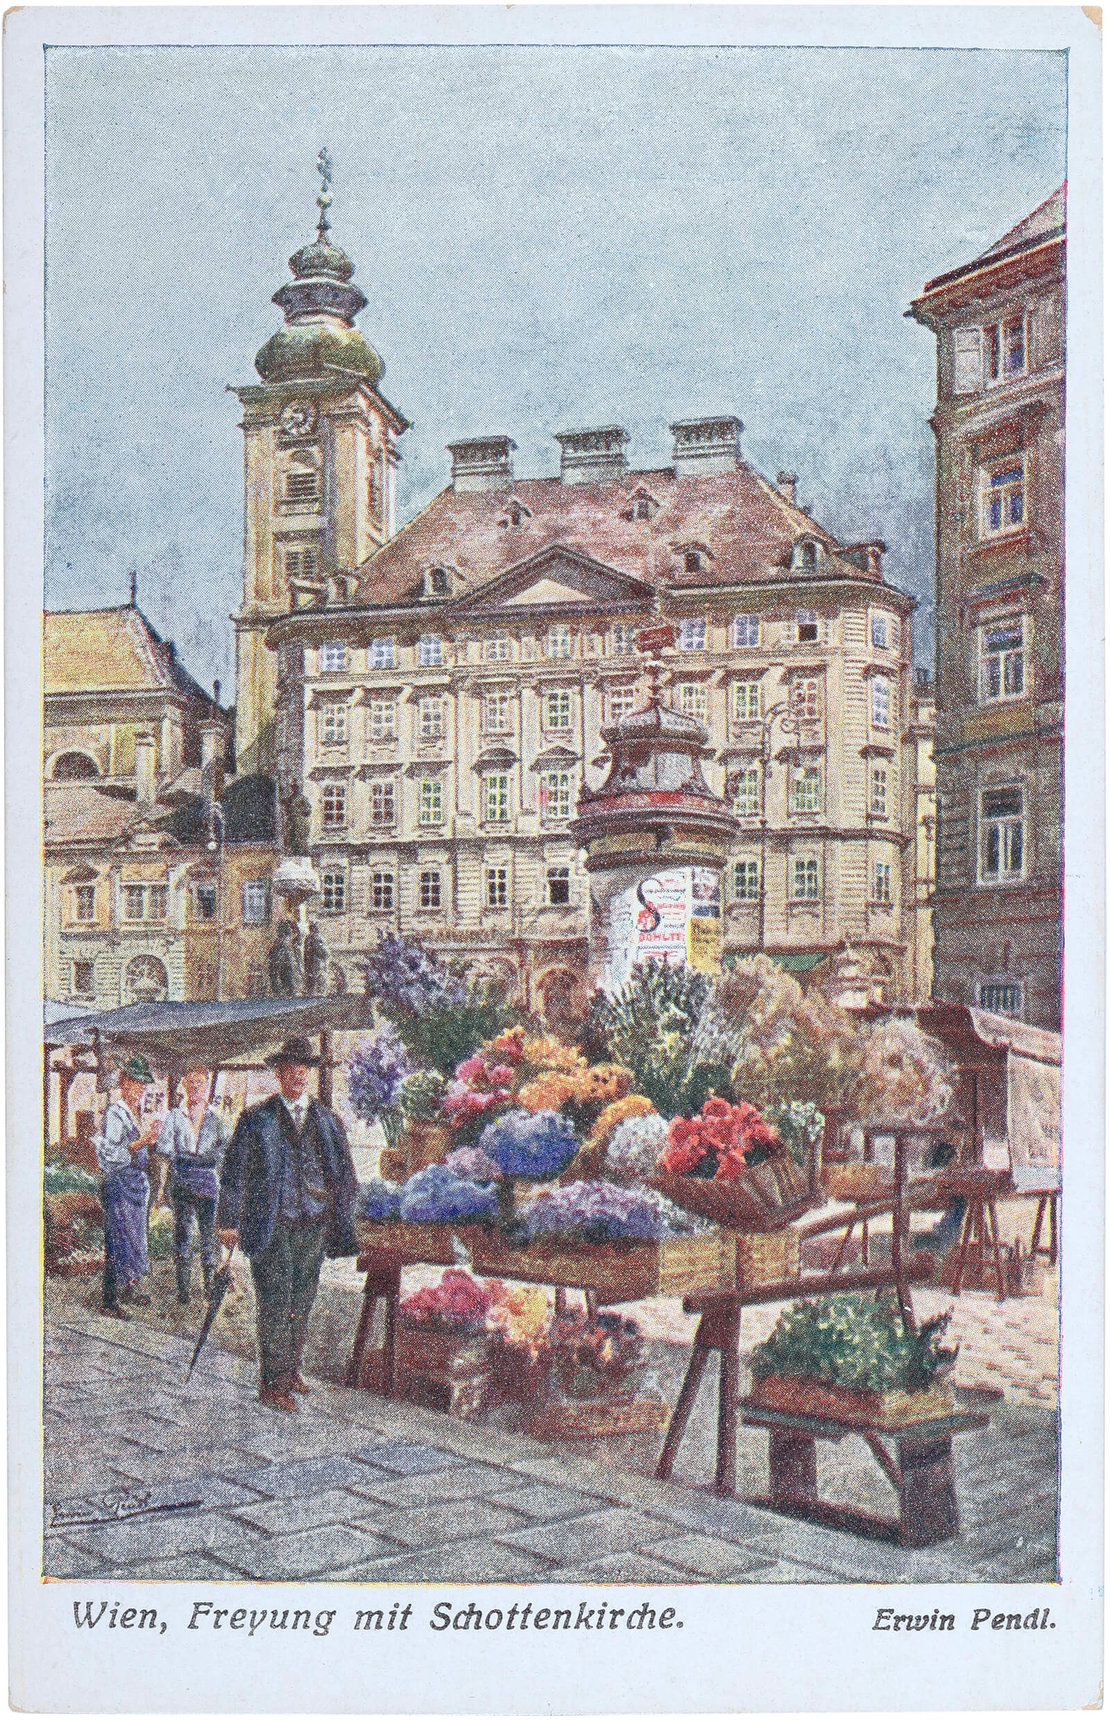 Freyung mit Schottenkirche, Ansichtskarte nach einem Aquarell von Erwin Pendel, Brüder Kohn, um 1910, Wien Museum 